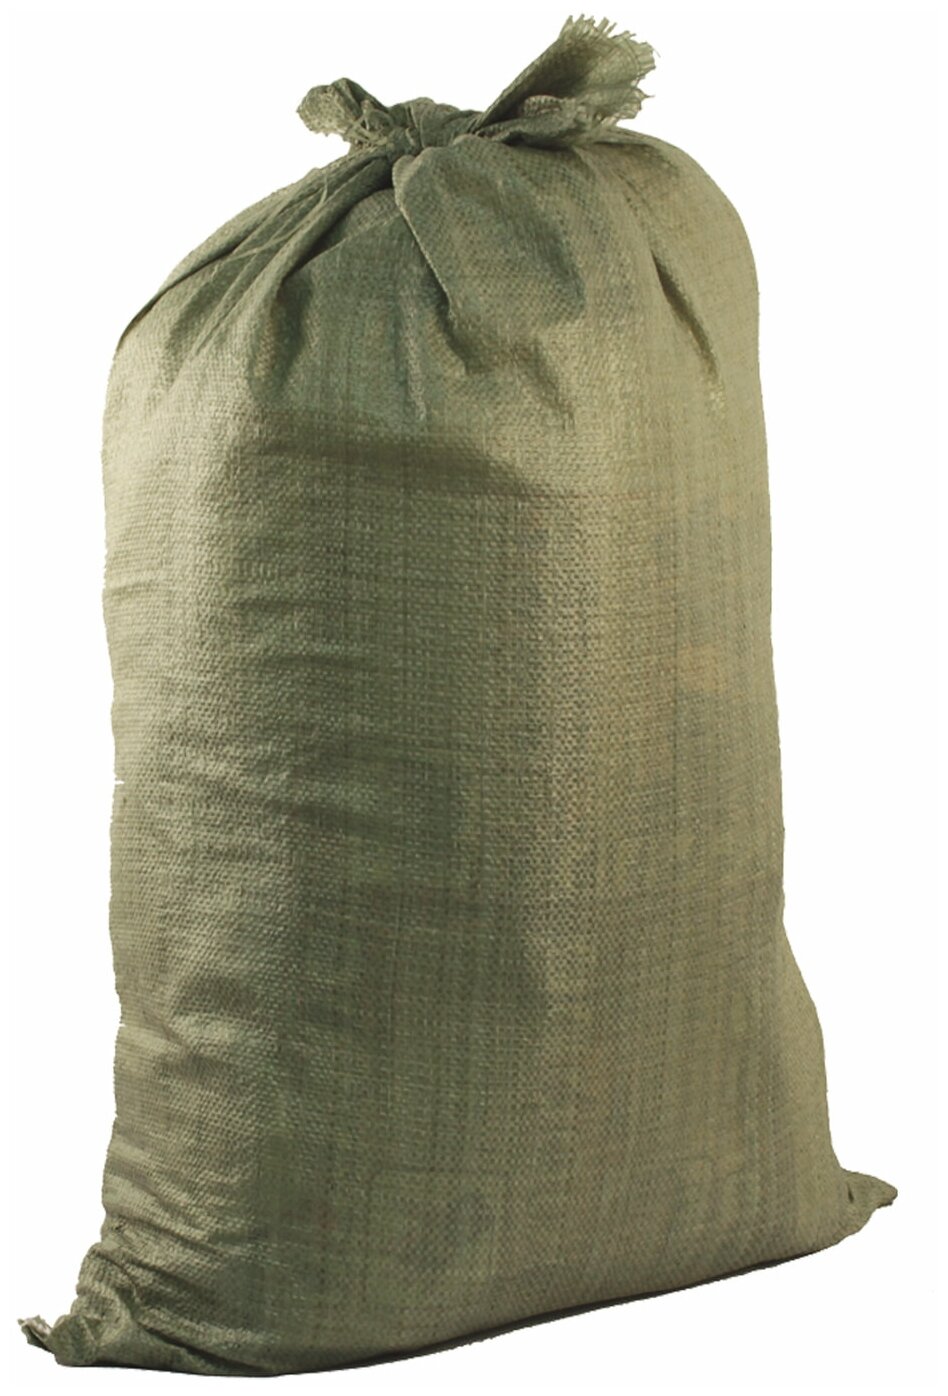 Мешки полипропиленовые до 50 кг комплект 100 шт 95х55 см вес 47 г для строительного/бытового мусора зеленые